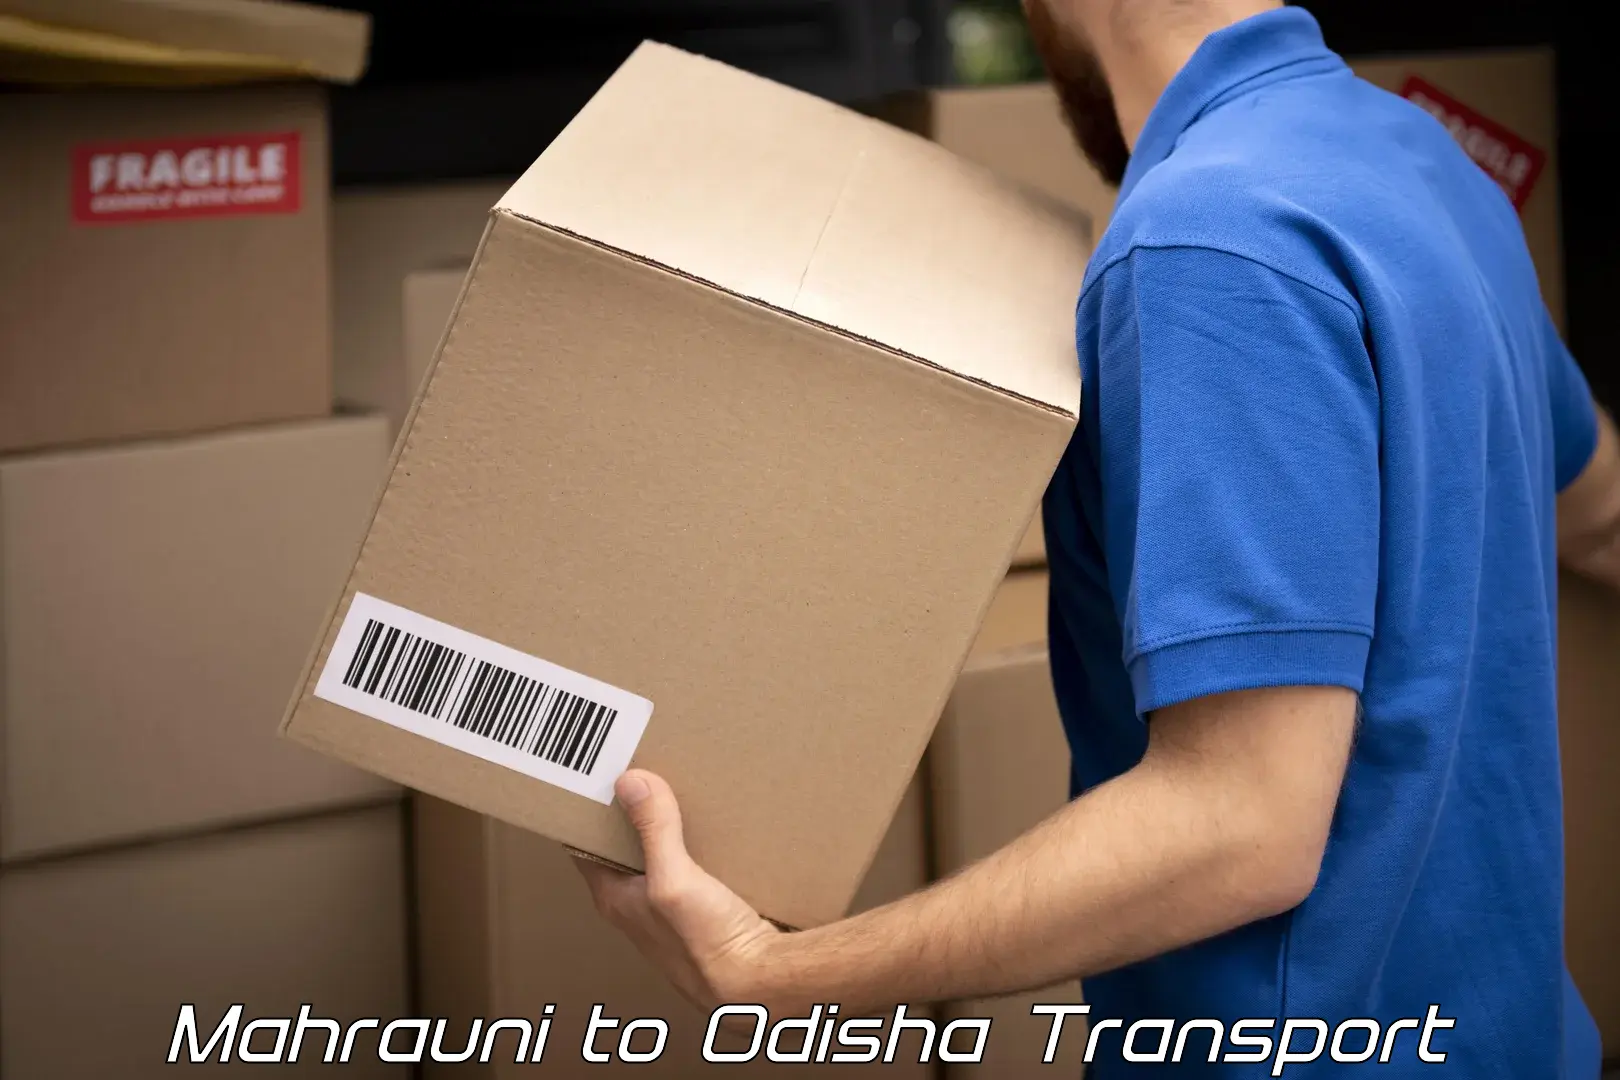 Cargo transportation services Mahrauni to Ukhunda